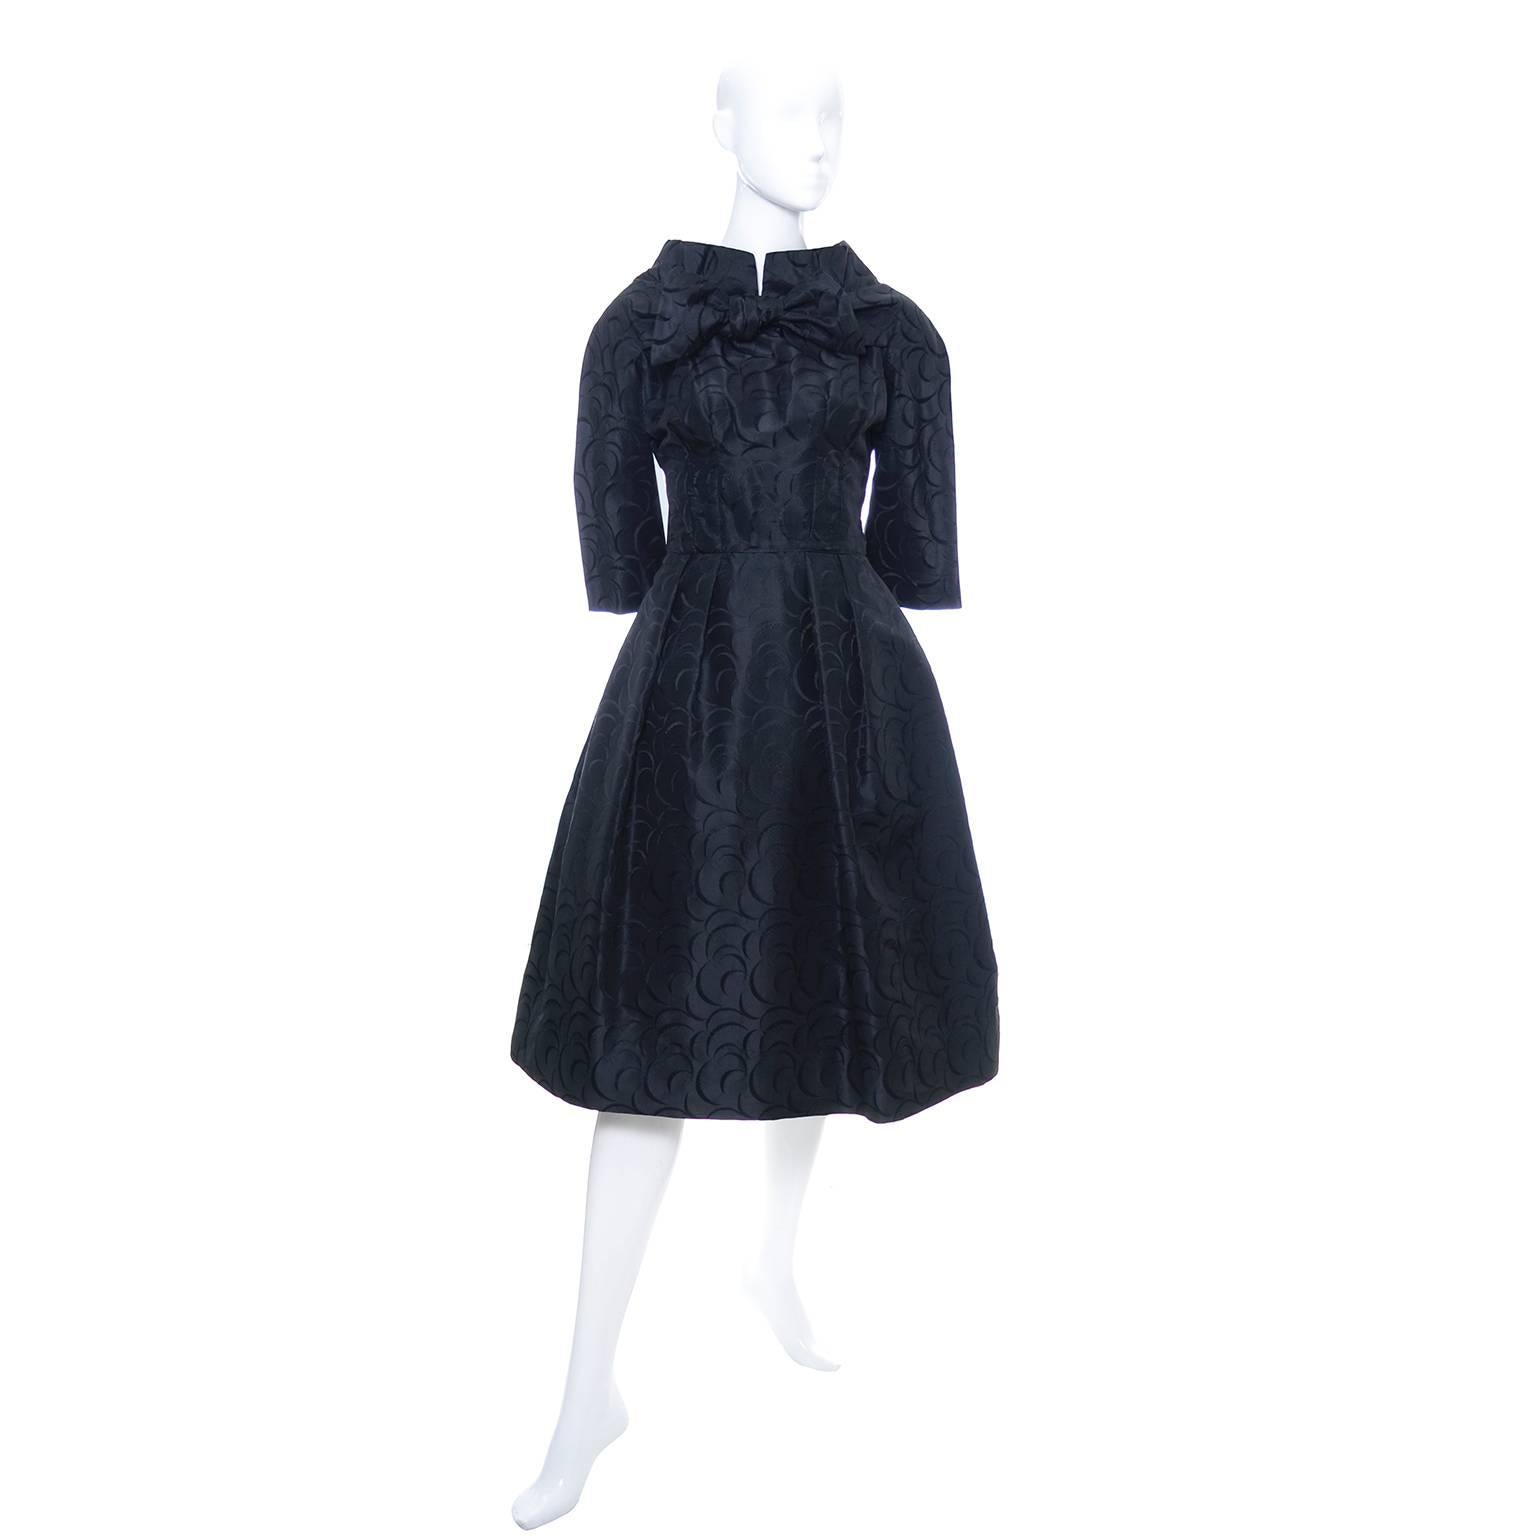 Werle Beverly Hills 1950's Vintage Dress Saks Fifth Avenue Black Patterned Satin 2